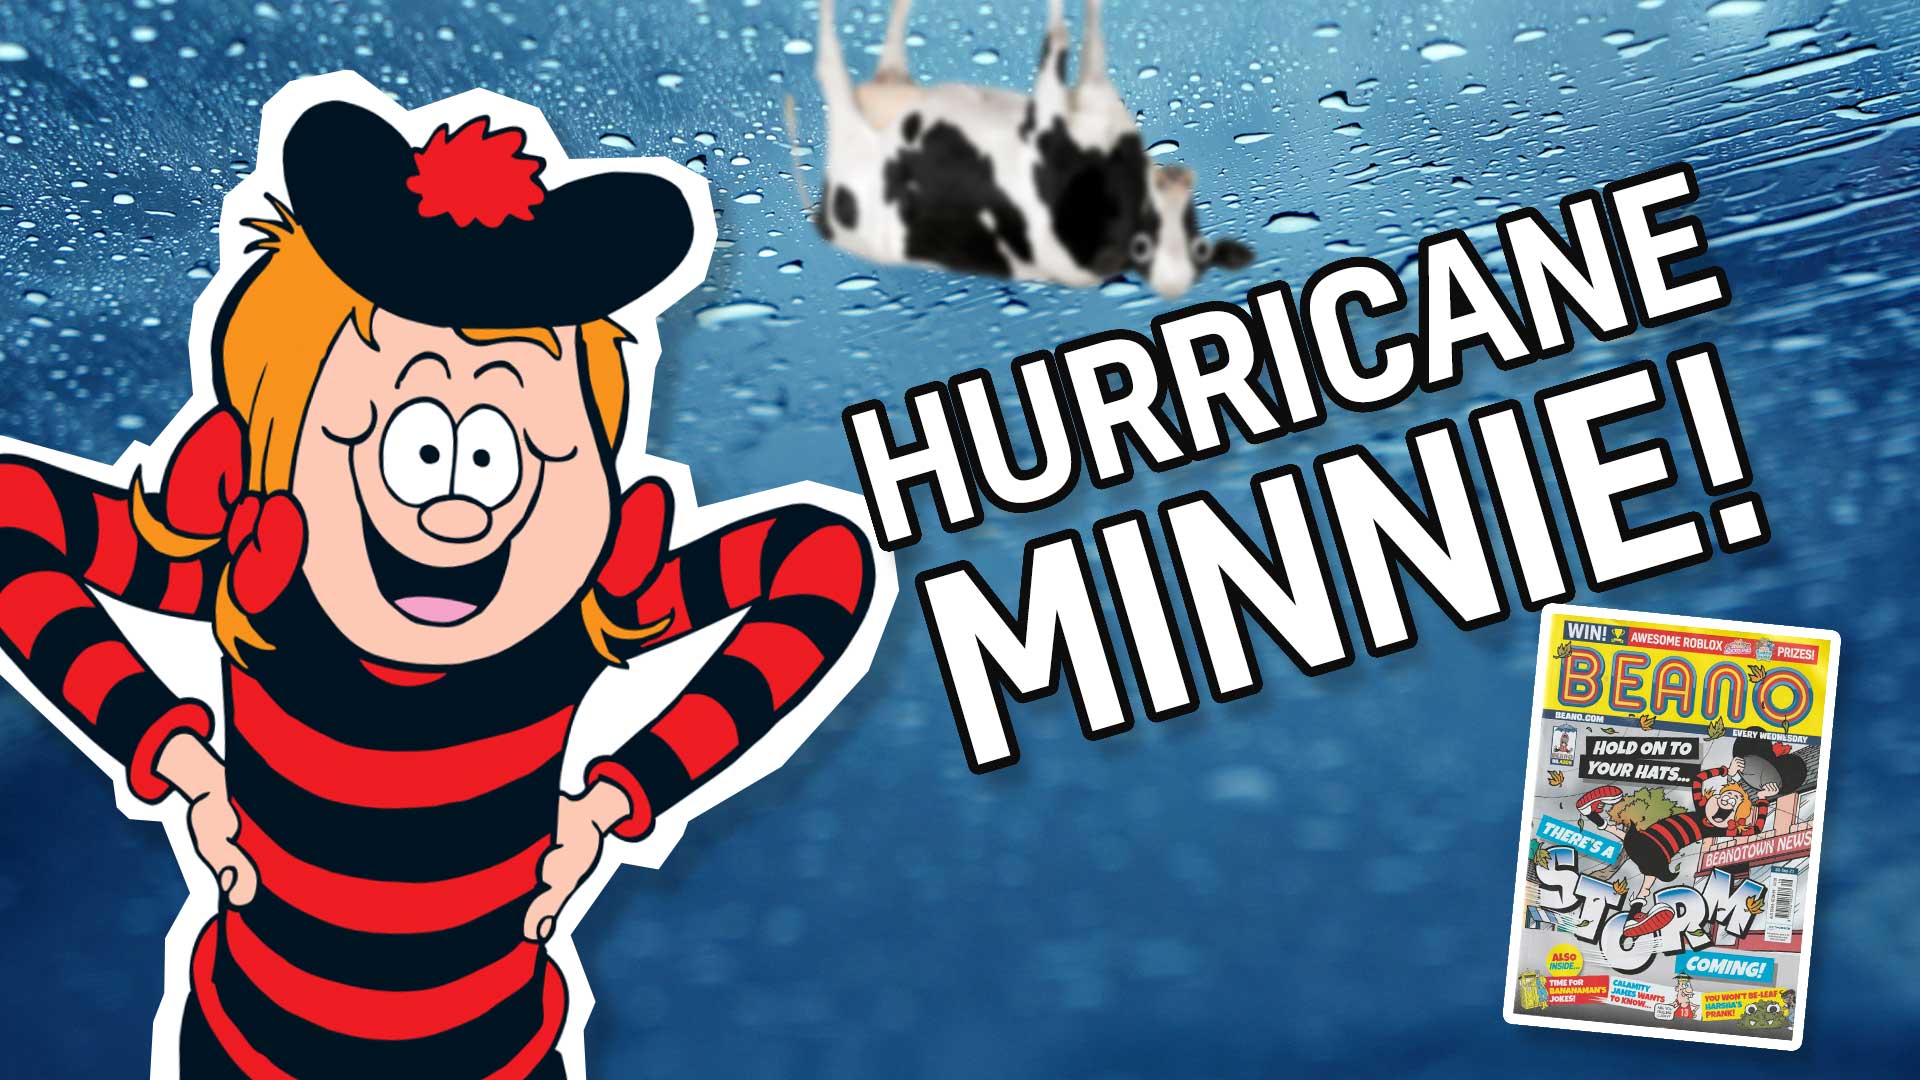 Result: Hurricane Minnie